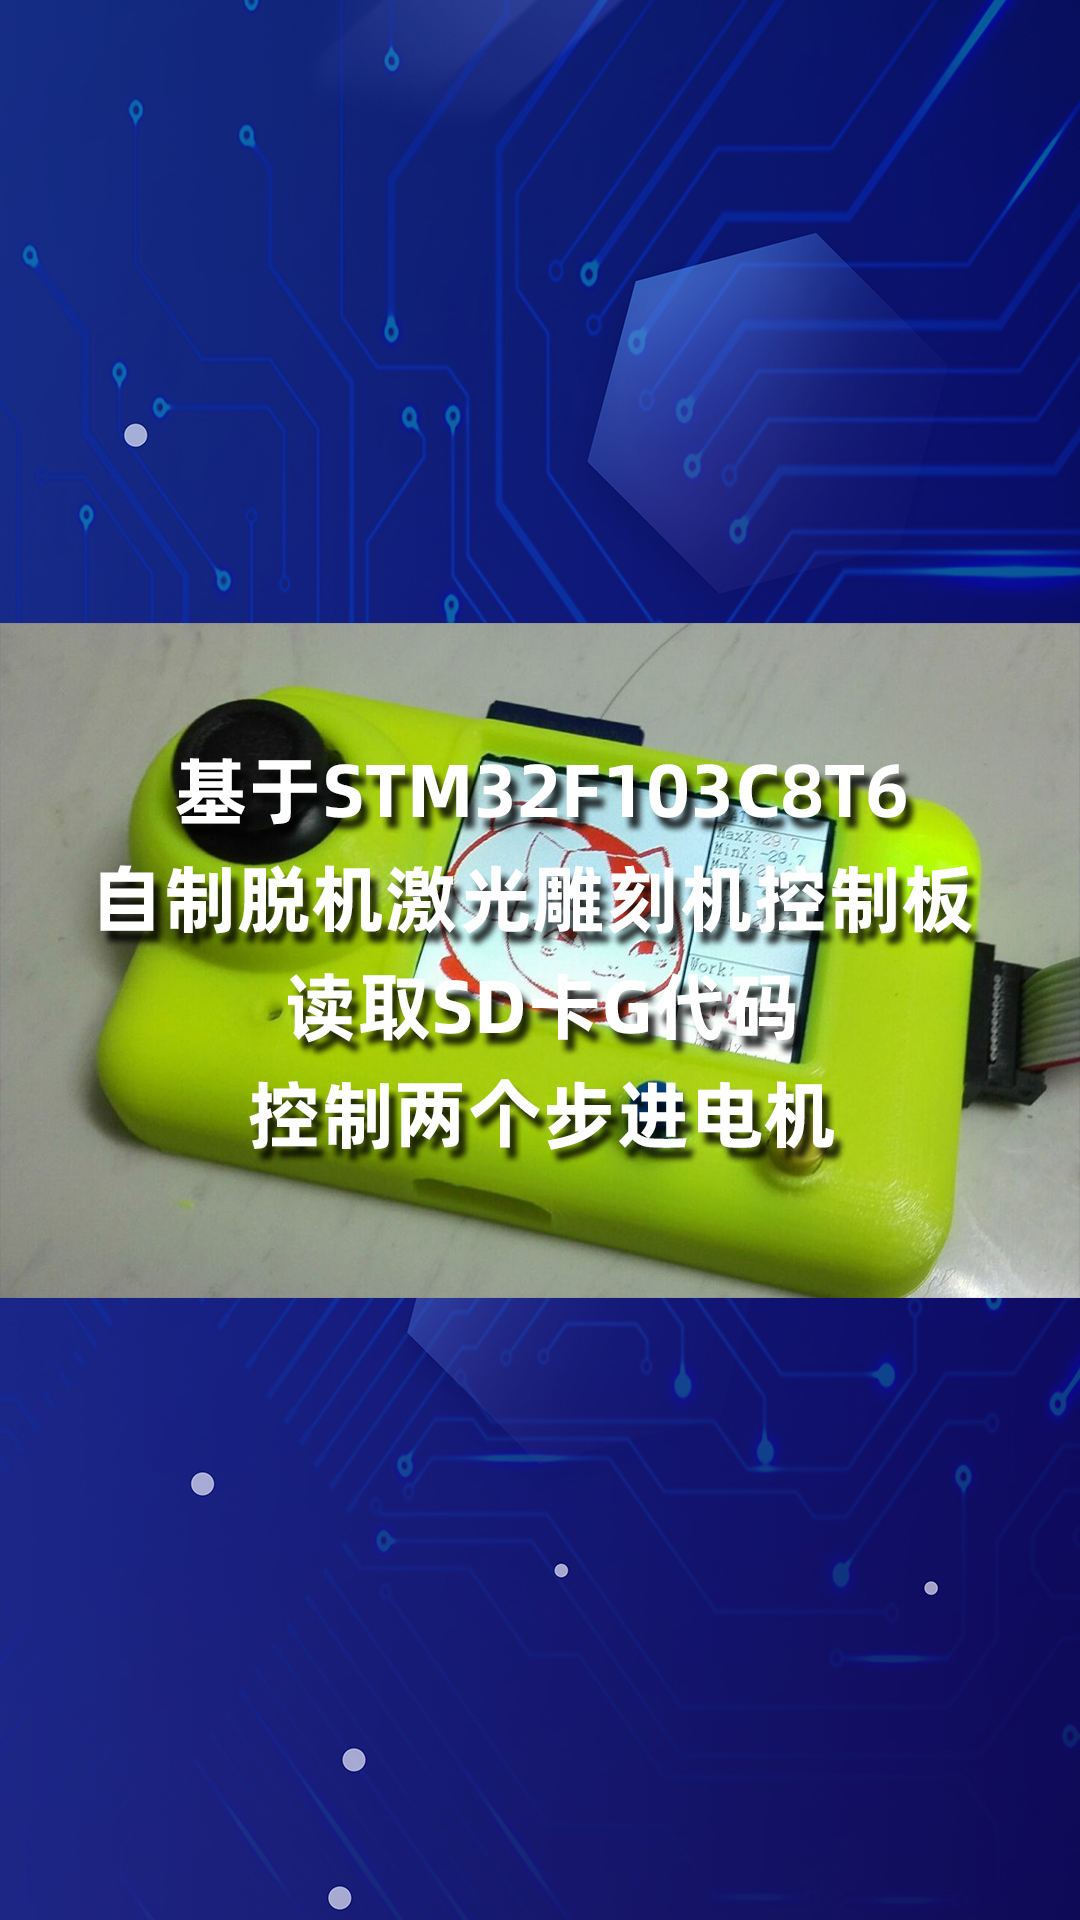 基于STM32F103C8T6自制脱机激光雕刻机控制板 读取SD卡G代码控制两个步进电机.